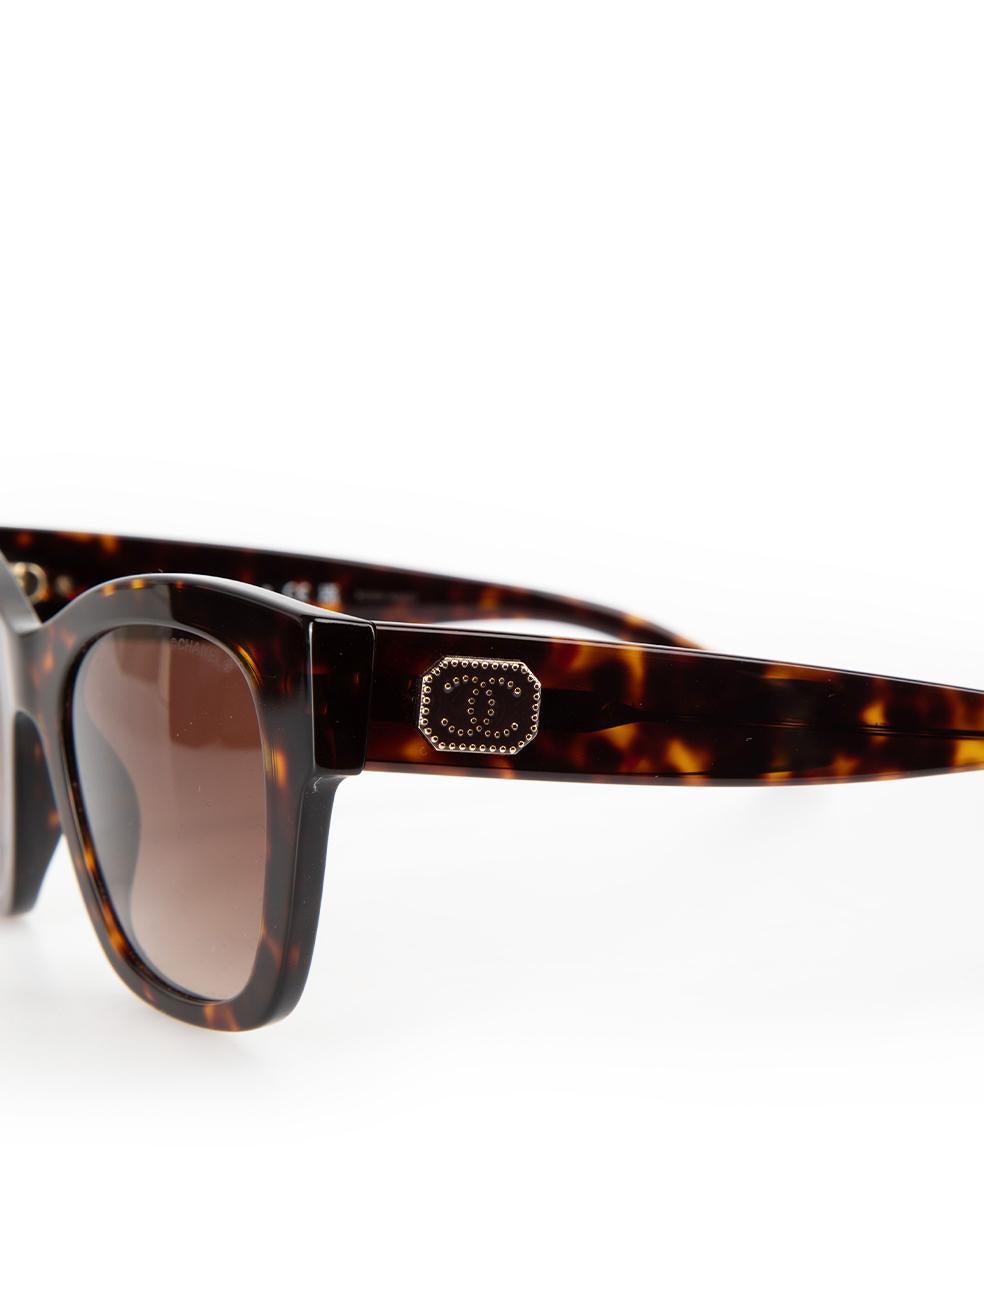 Chanel Dark Tortoise Square Sunglasses For Sale 2